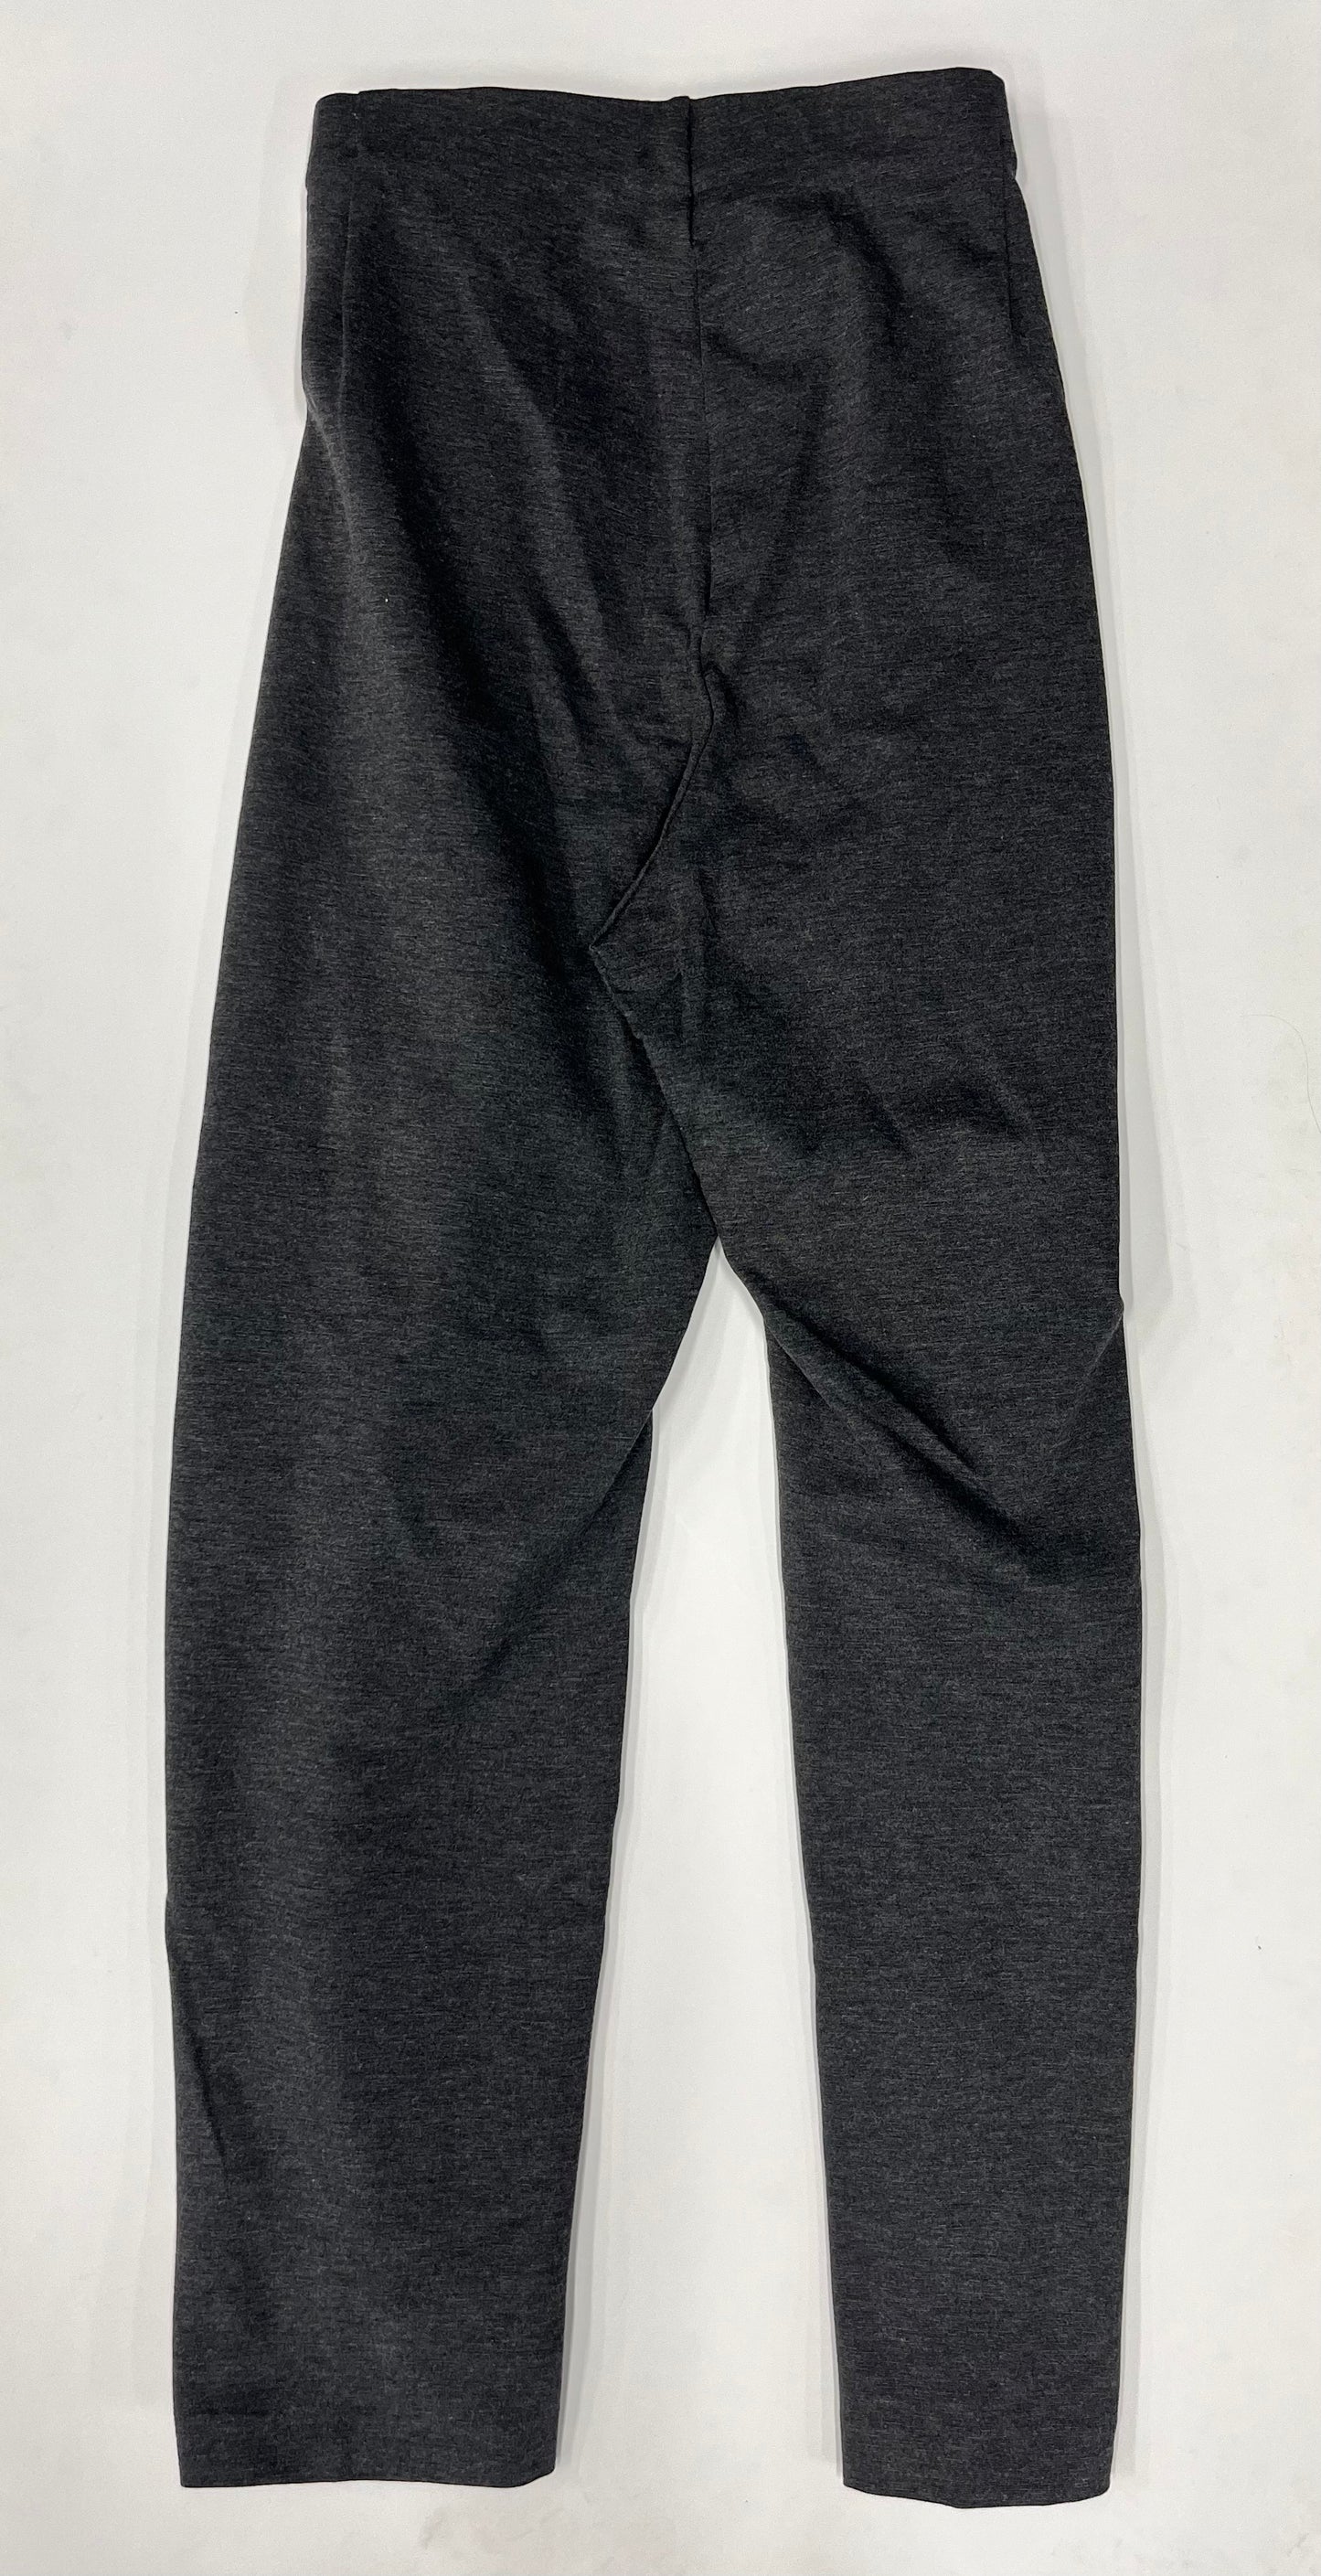 Pants Work/dress By Liz Claiborne NWT  Size: 2x